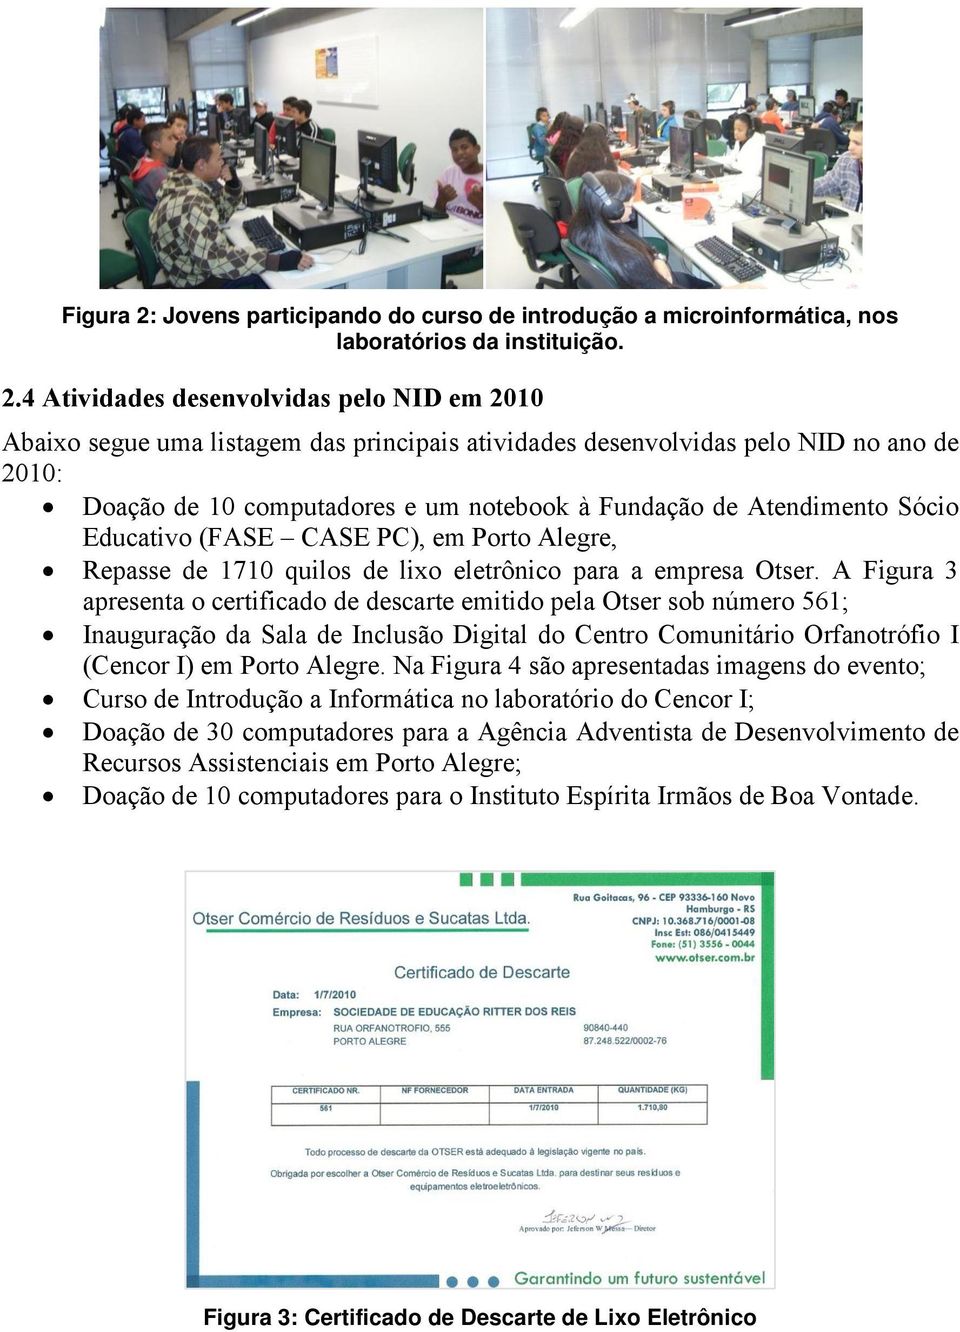 4 Atividades desenvolvidas pelo NID em 2010 2010: Doação de 10 computadores e um notebook à Fundação de Atendimento Sócio Educativo (FASE CASE PC), em Porto Alegre, Repasse de 1710 quilos de lixo